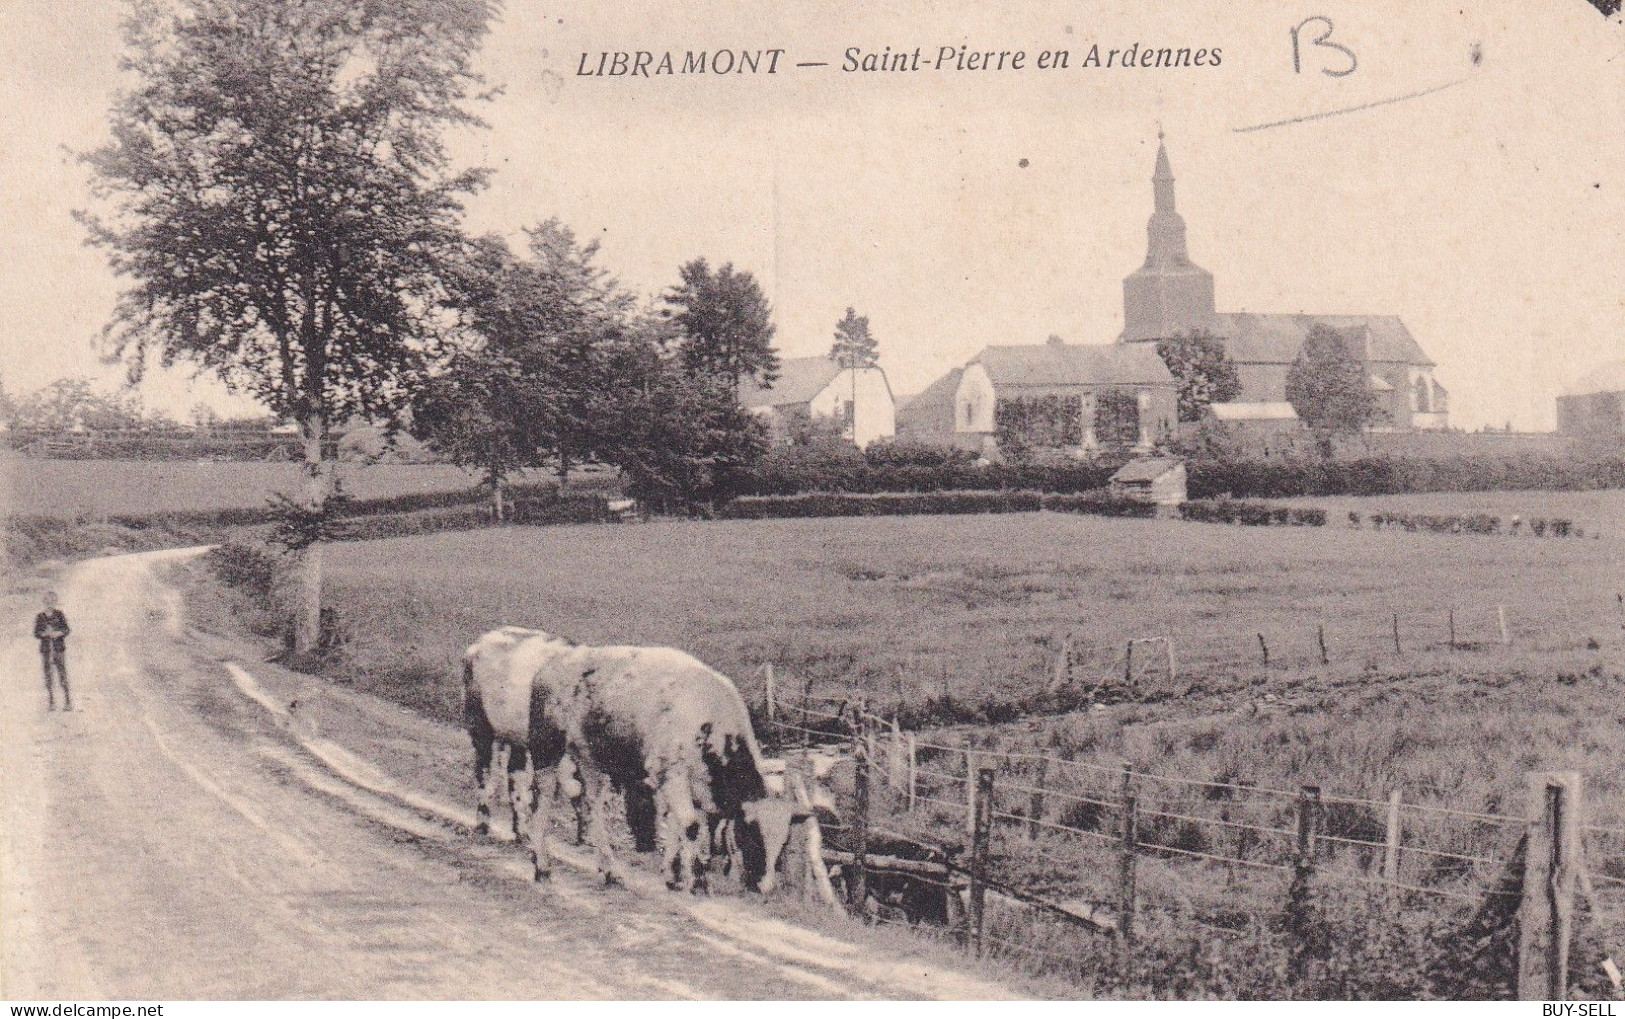 BELGIQUE - LIBRAMONT - Saint-Pierre En Ardennes - 1919 - Libramont-Chevigny